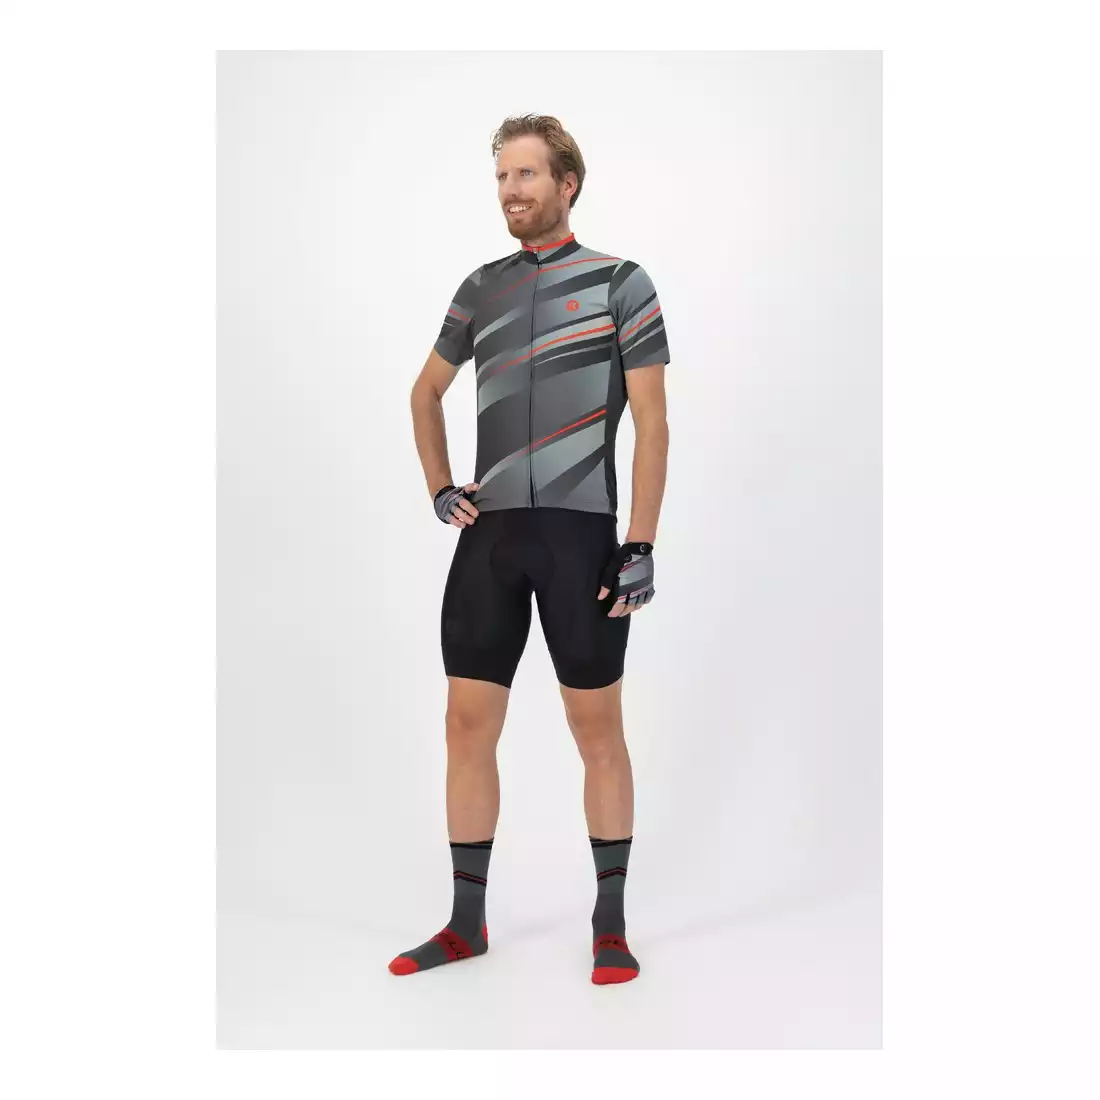 ROGELLI BUZZ Pánský cyklistický dres, šedý a červený